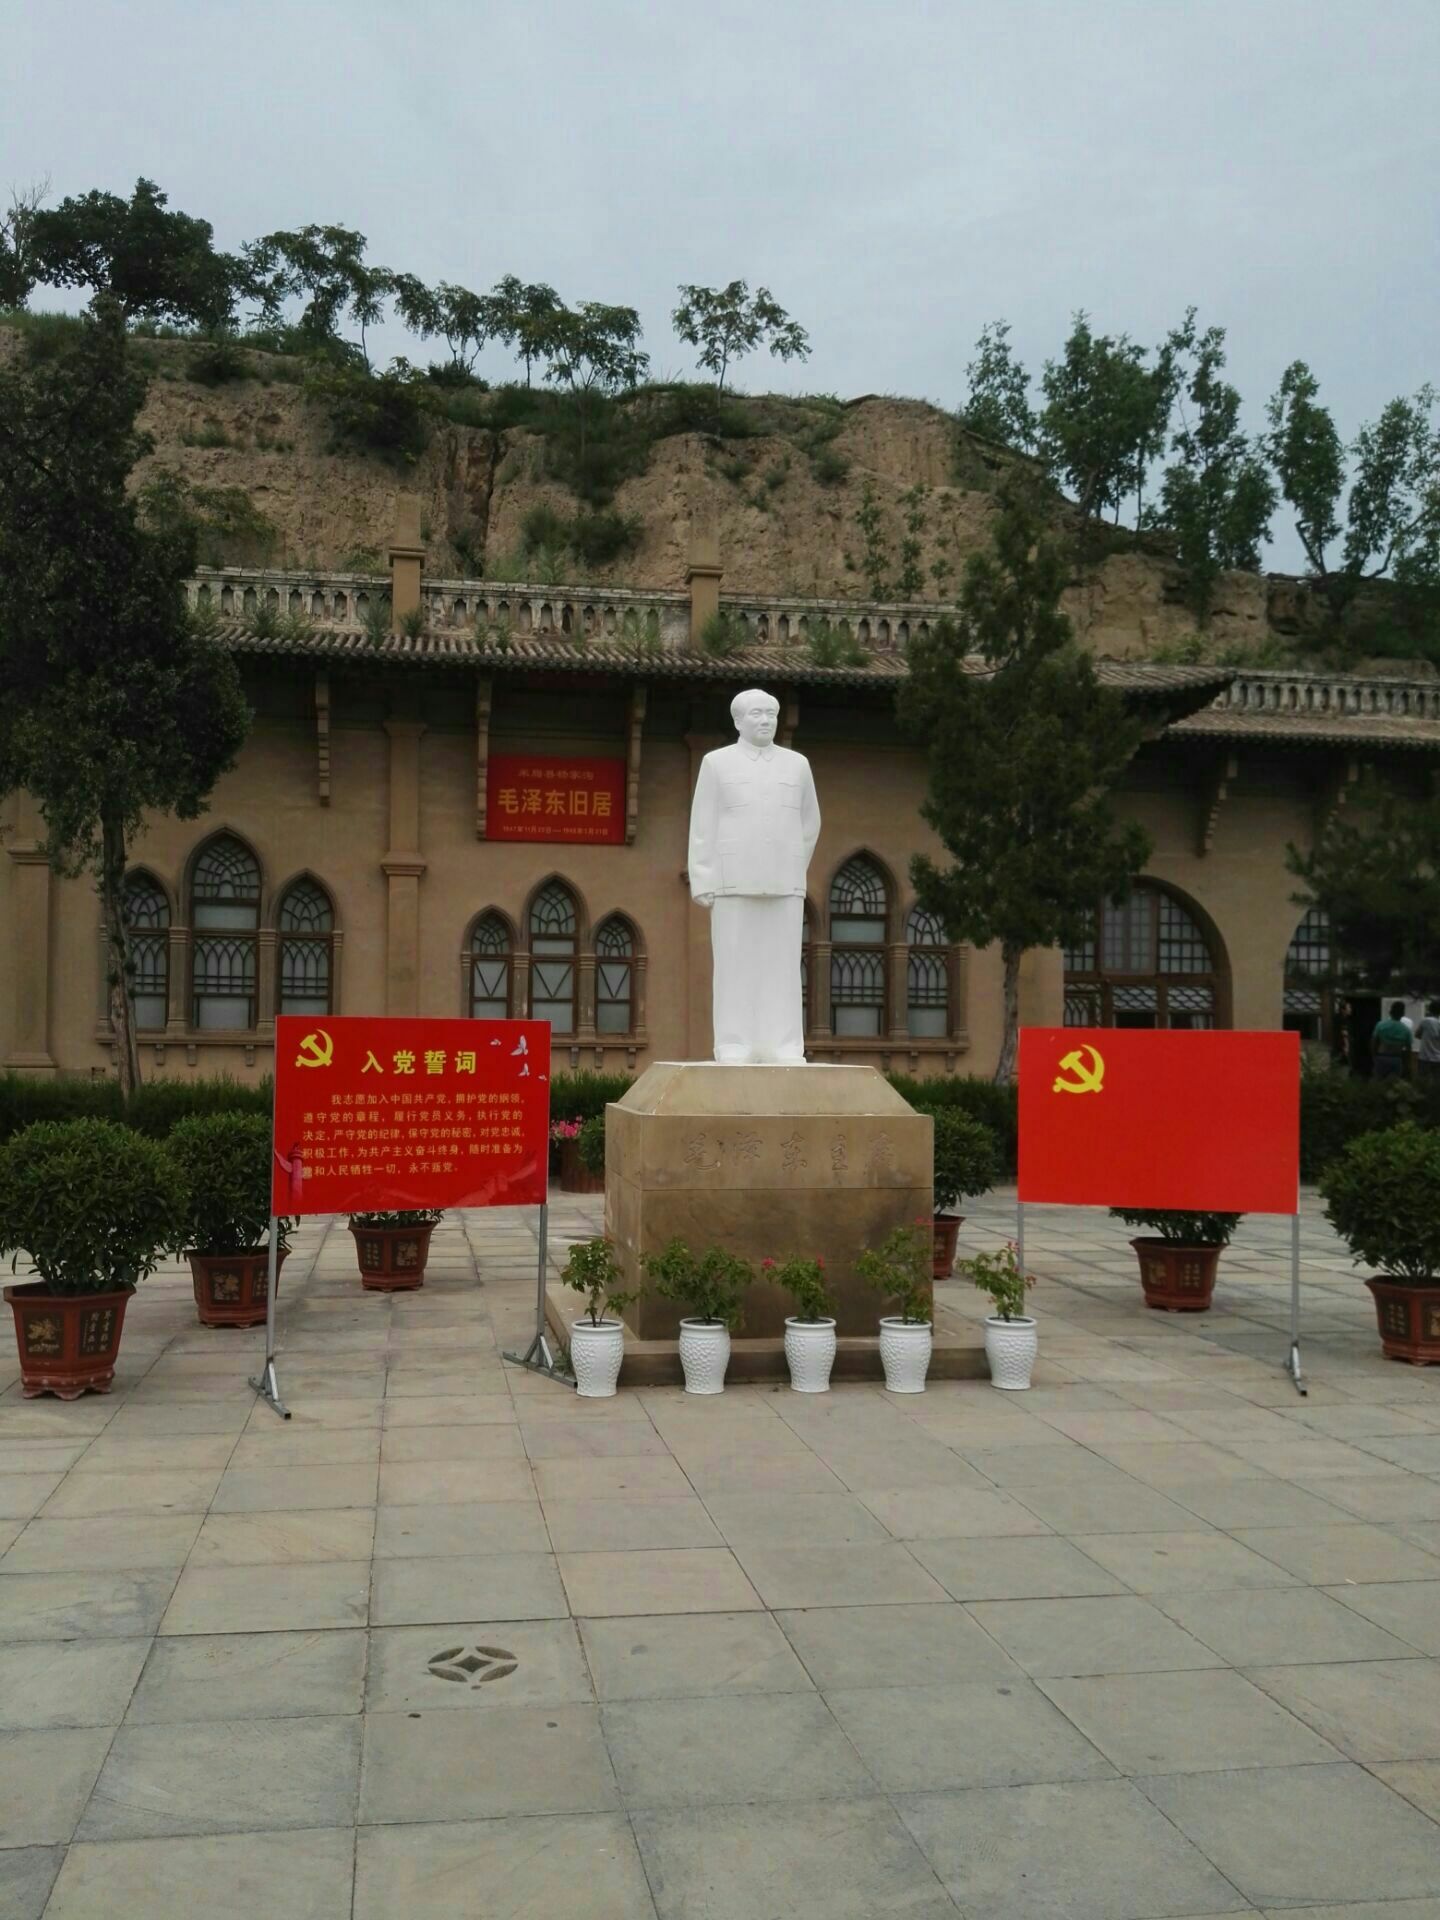 陕西米脂杨家沟革命纪念馆:是一处革命旧址,1972年建成革命纪念馆对外